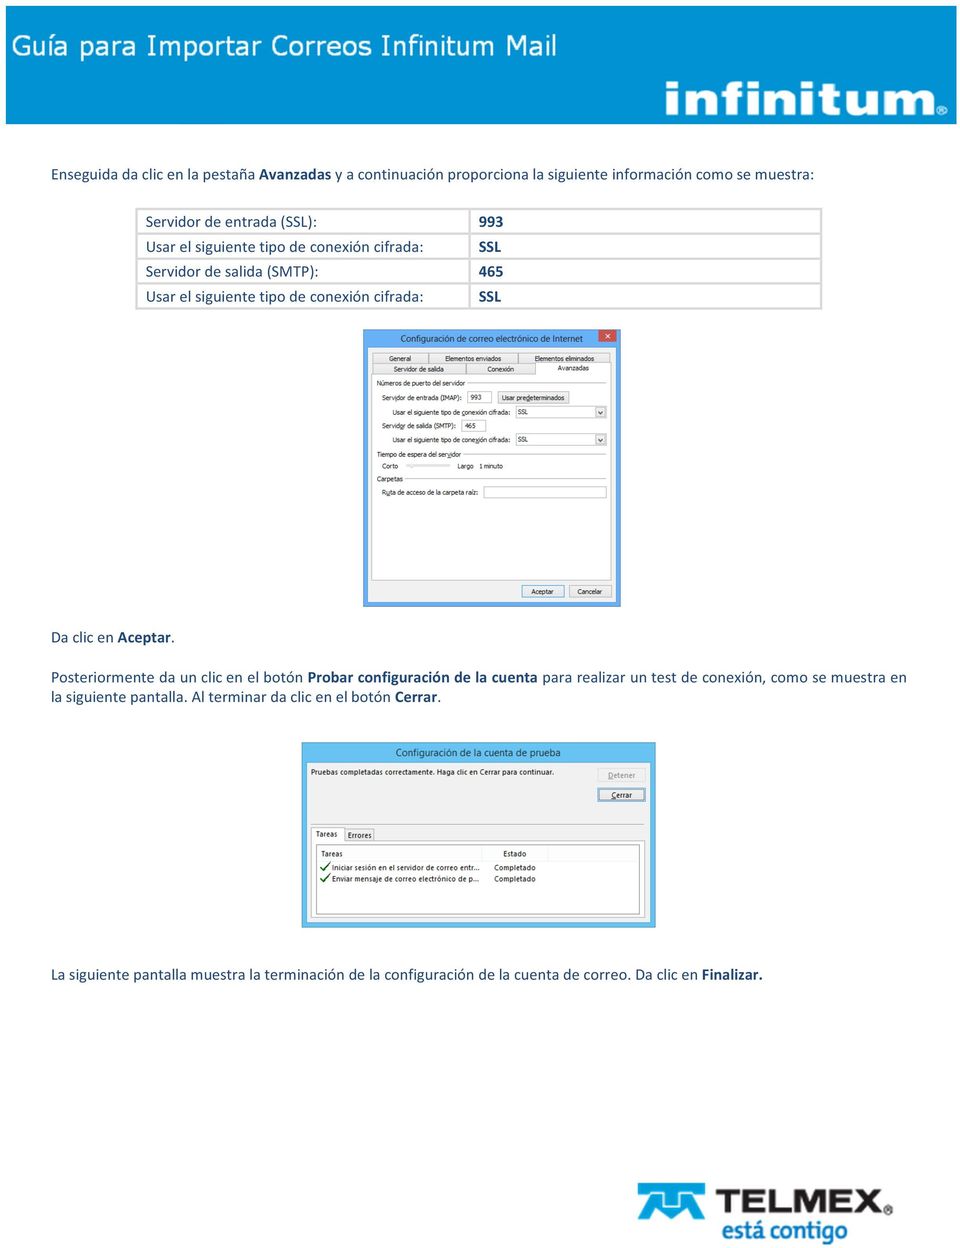 Posteriormente da un clic en el botón Probar configuración de la cuenta para realizar un test de conexión, como se muestra en la siguiente pantalla.